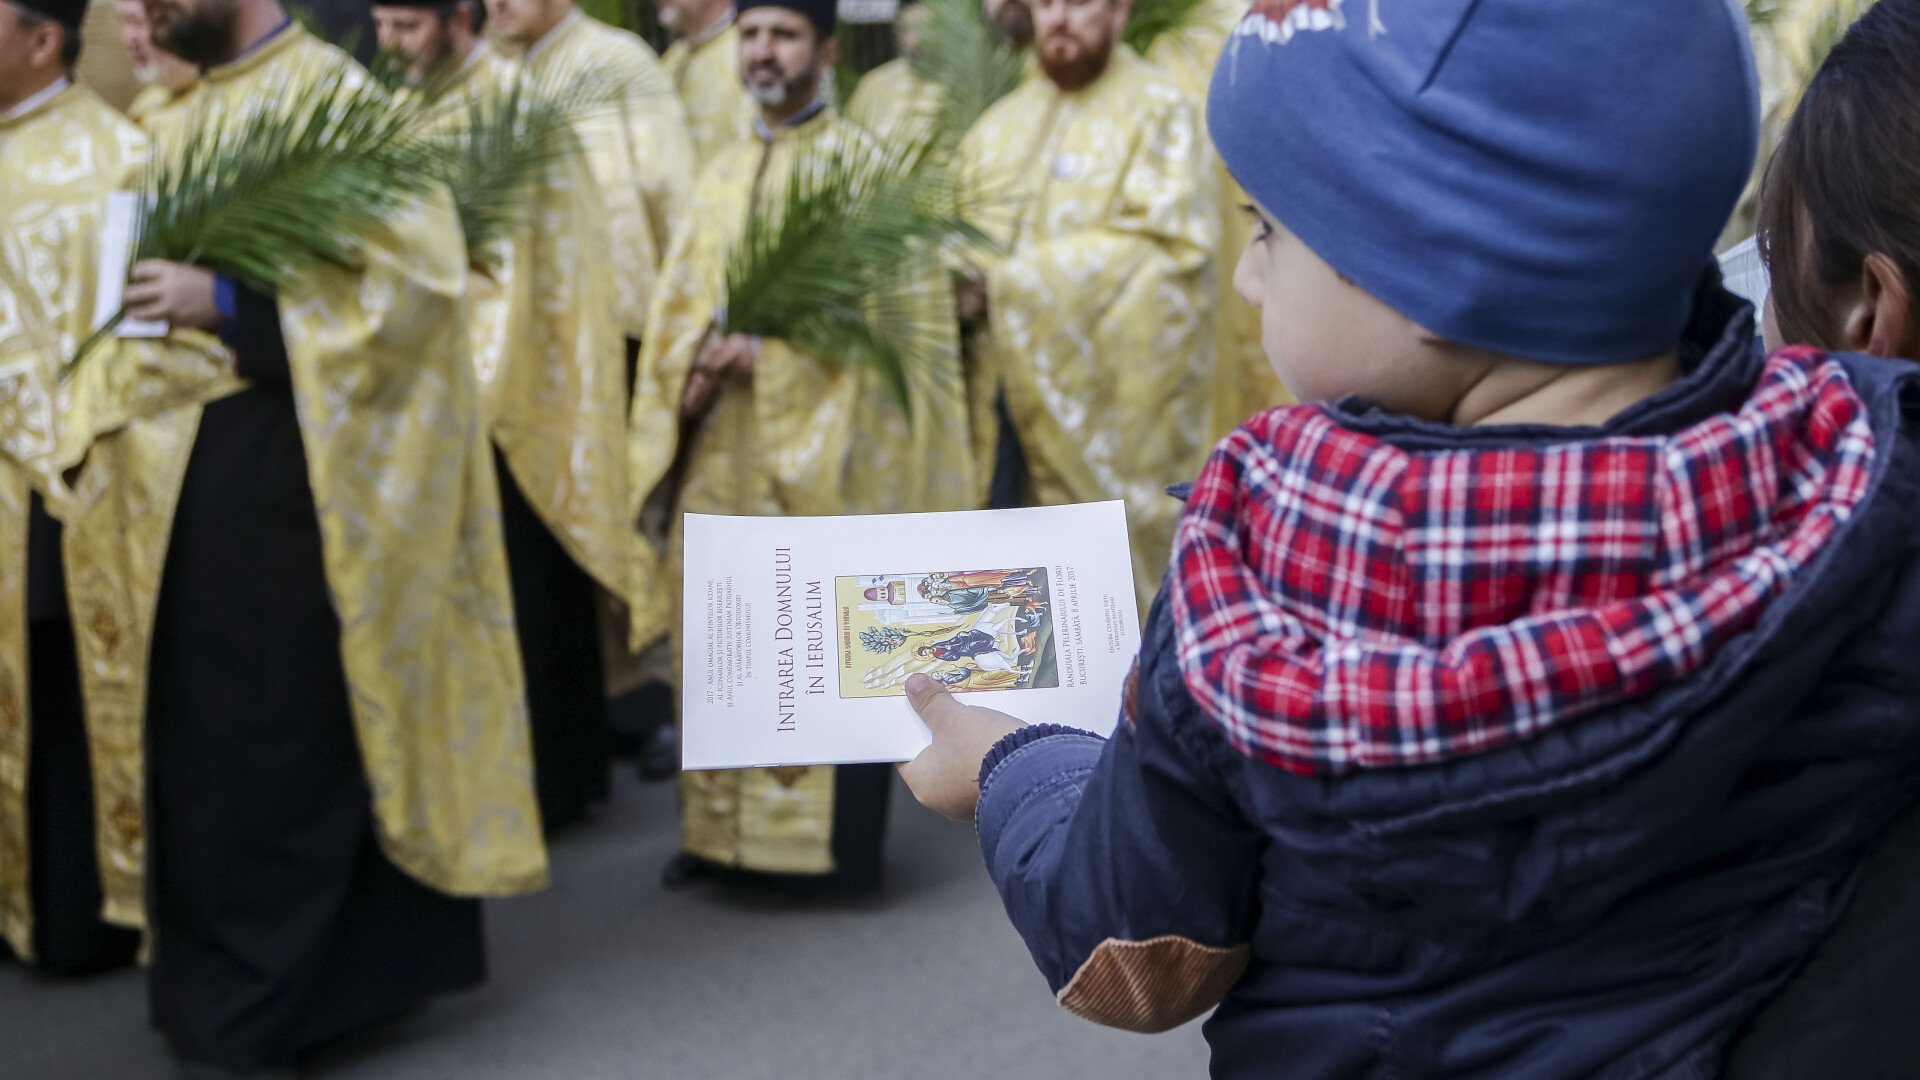 Preoții și copiii din Botoșani, puși de autorități să le explice oamenilor cum e cu pesta porcină. ”Sunt influenceri”